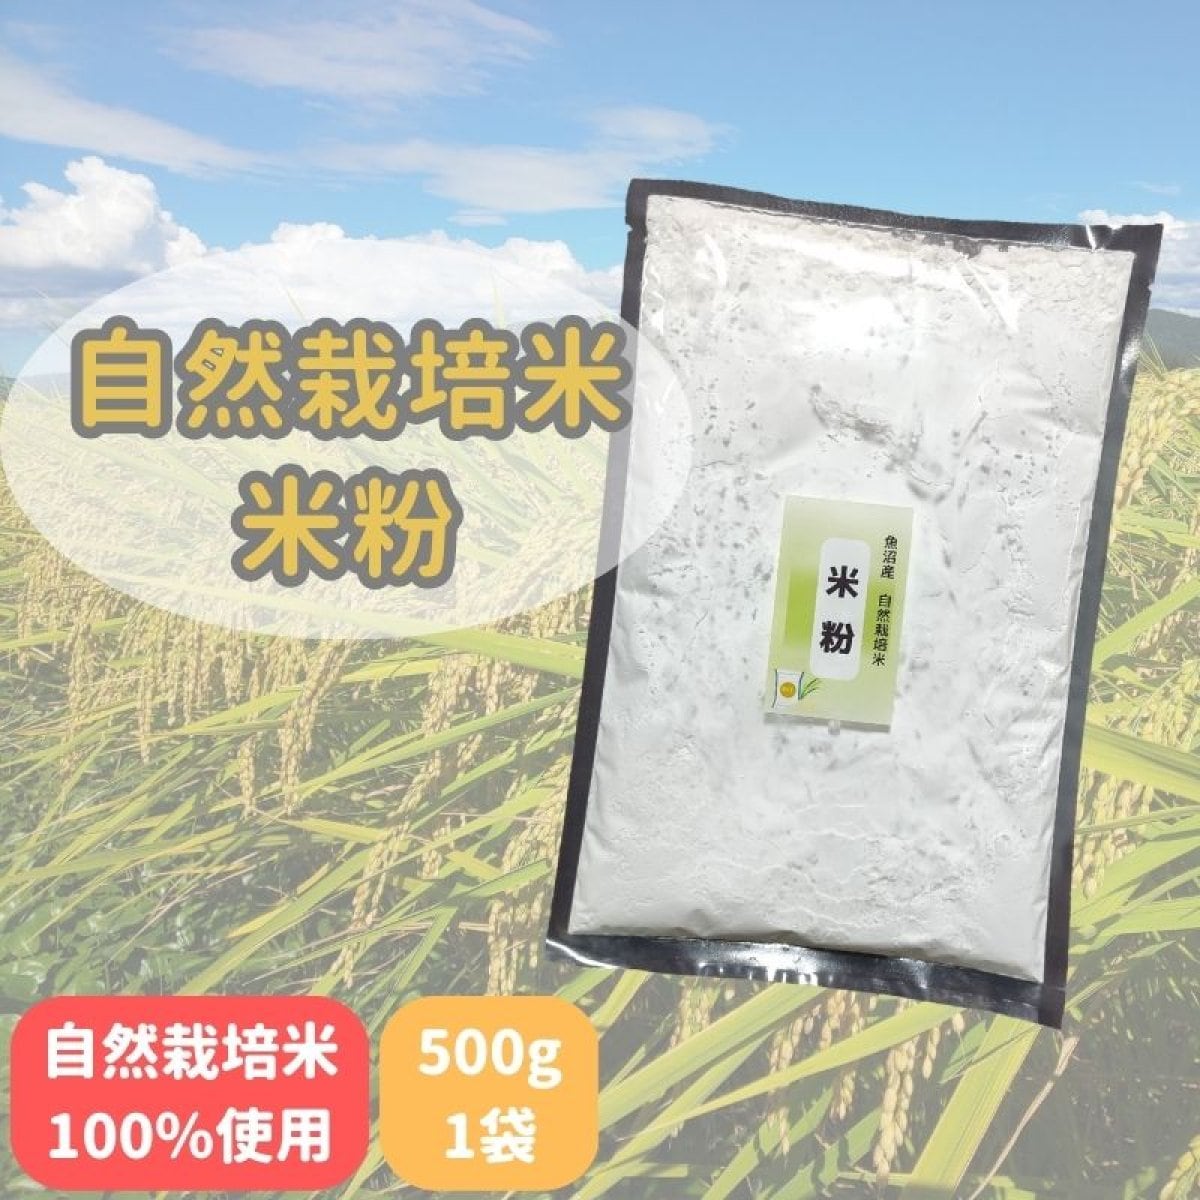 【500g×1袋】自然栽培米粉/新潟魚沼産自然栽培米通販ミノリ農産